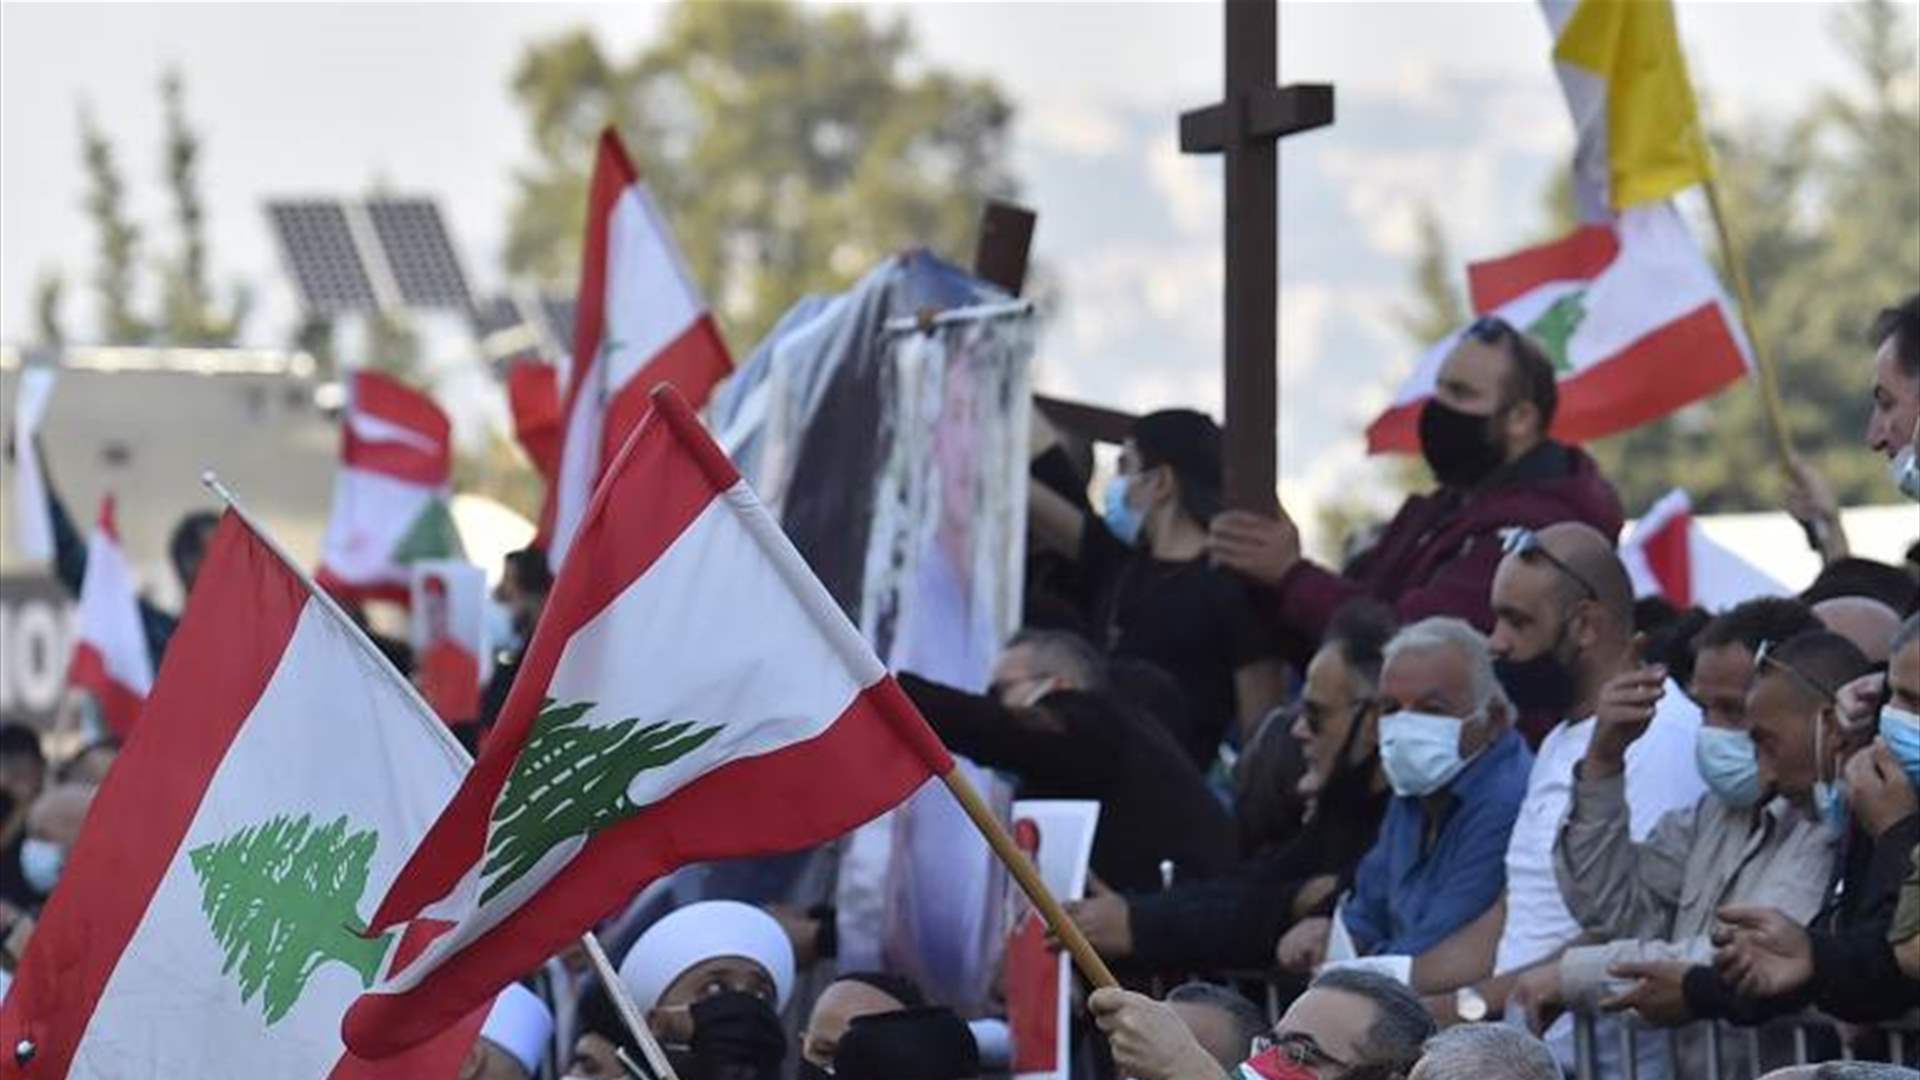  المسيحيون المقيمون في لبنان... ما صحة انهم يشكلون نسبة 19.4% من اللبنانيين؟